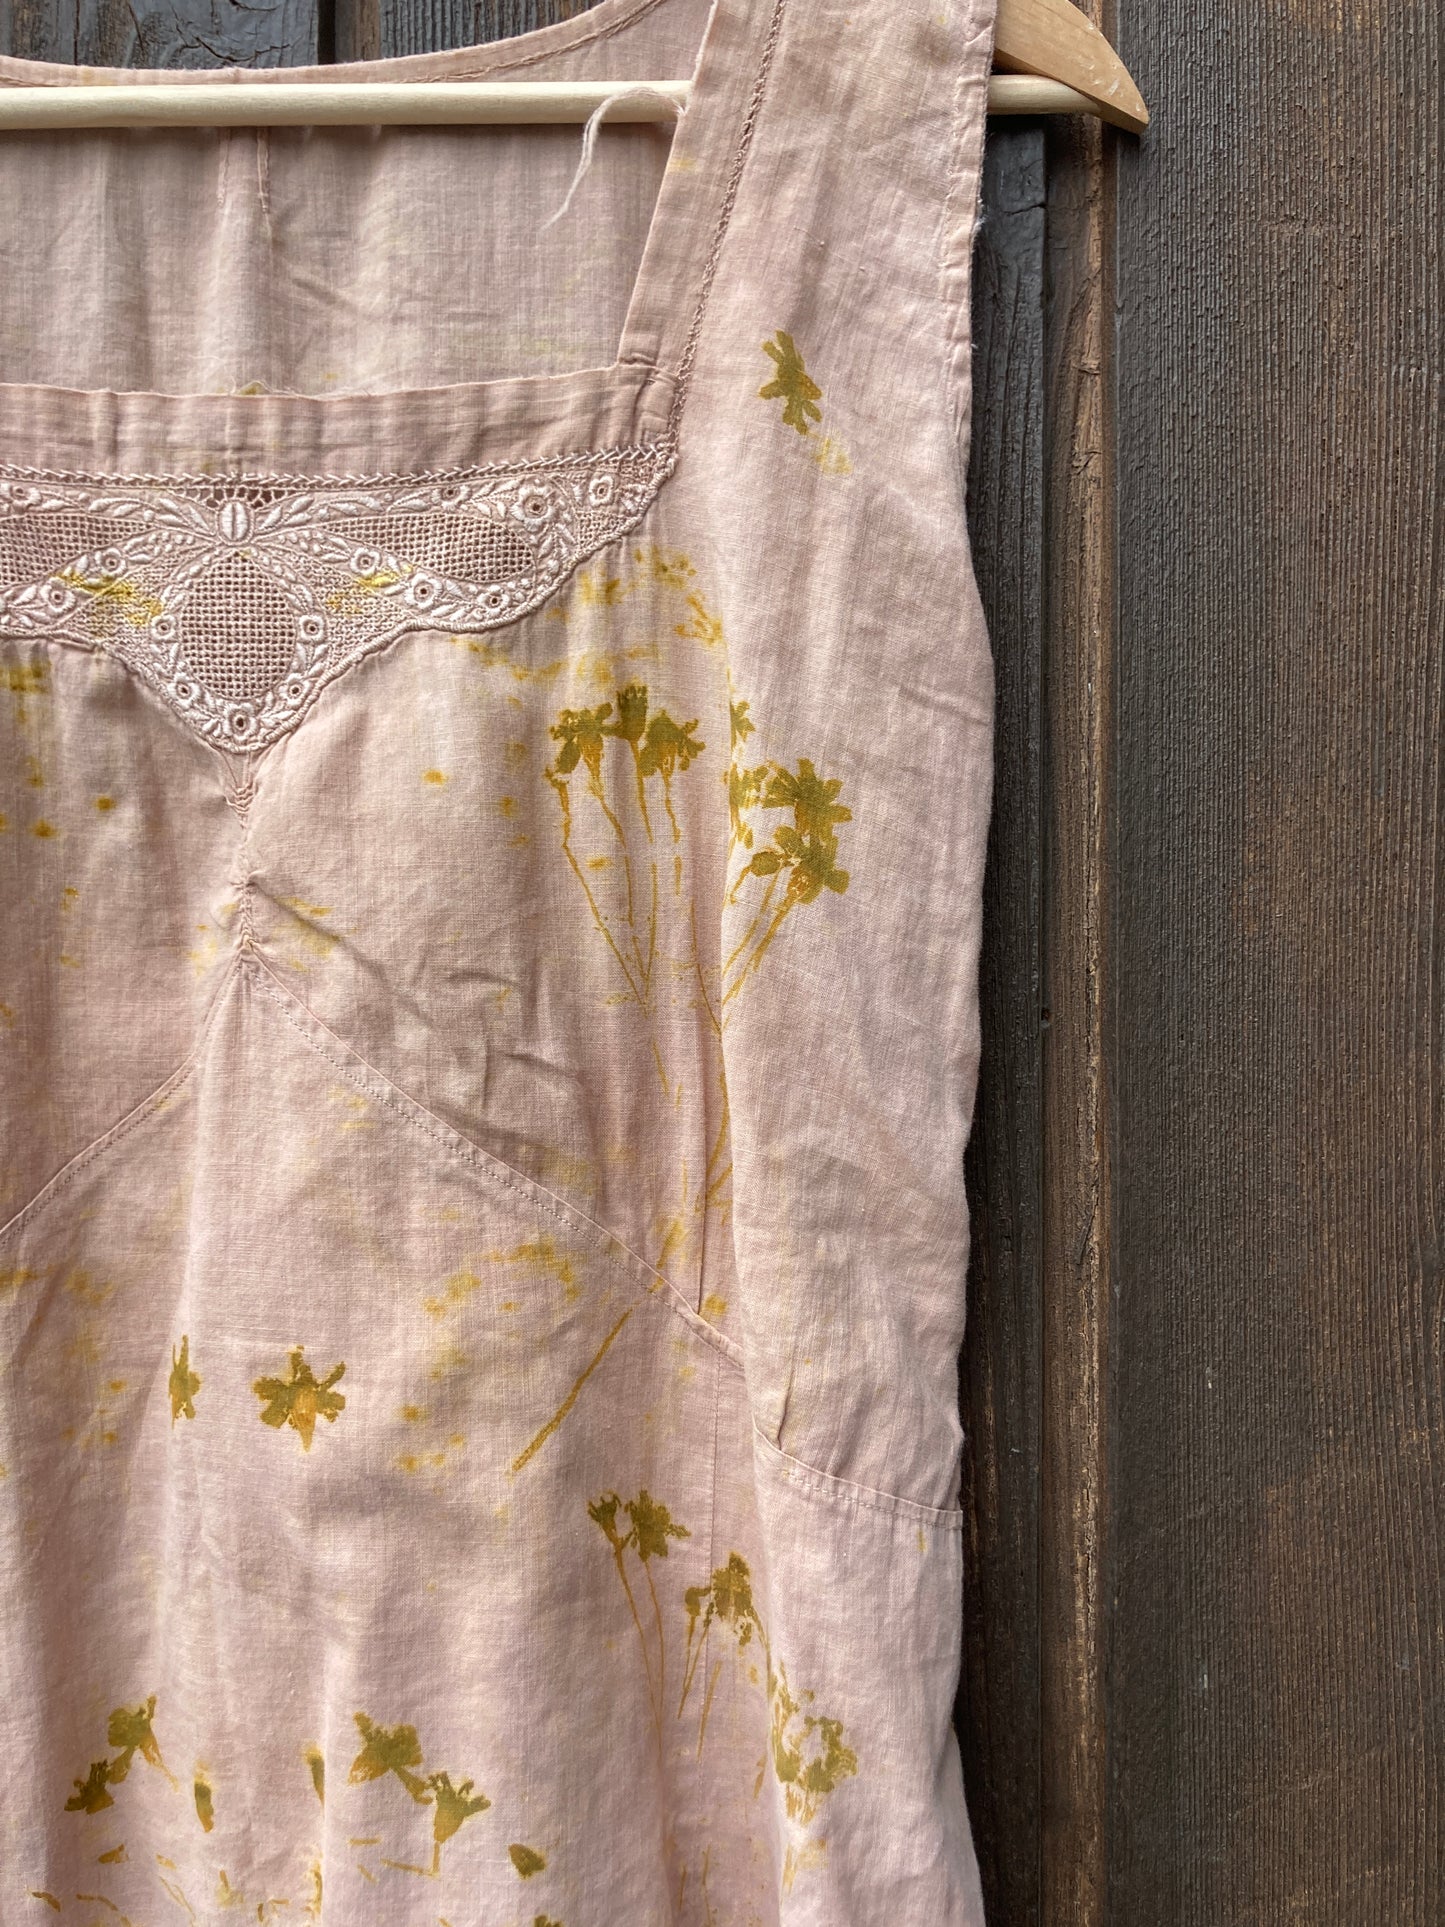 Cutch & Logwood, Bundle Dyed Antique Dress